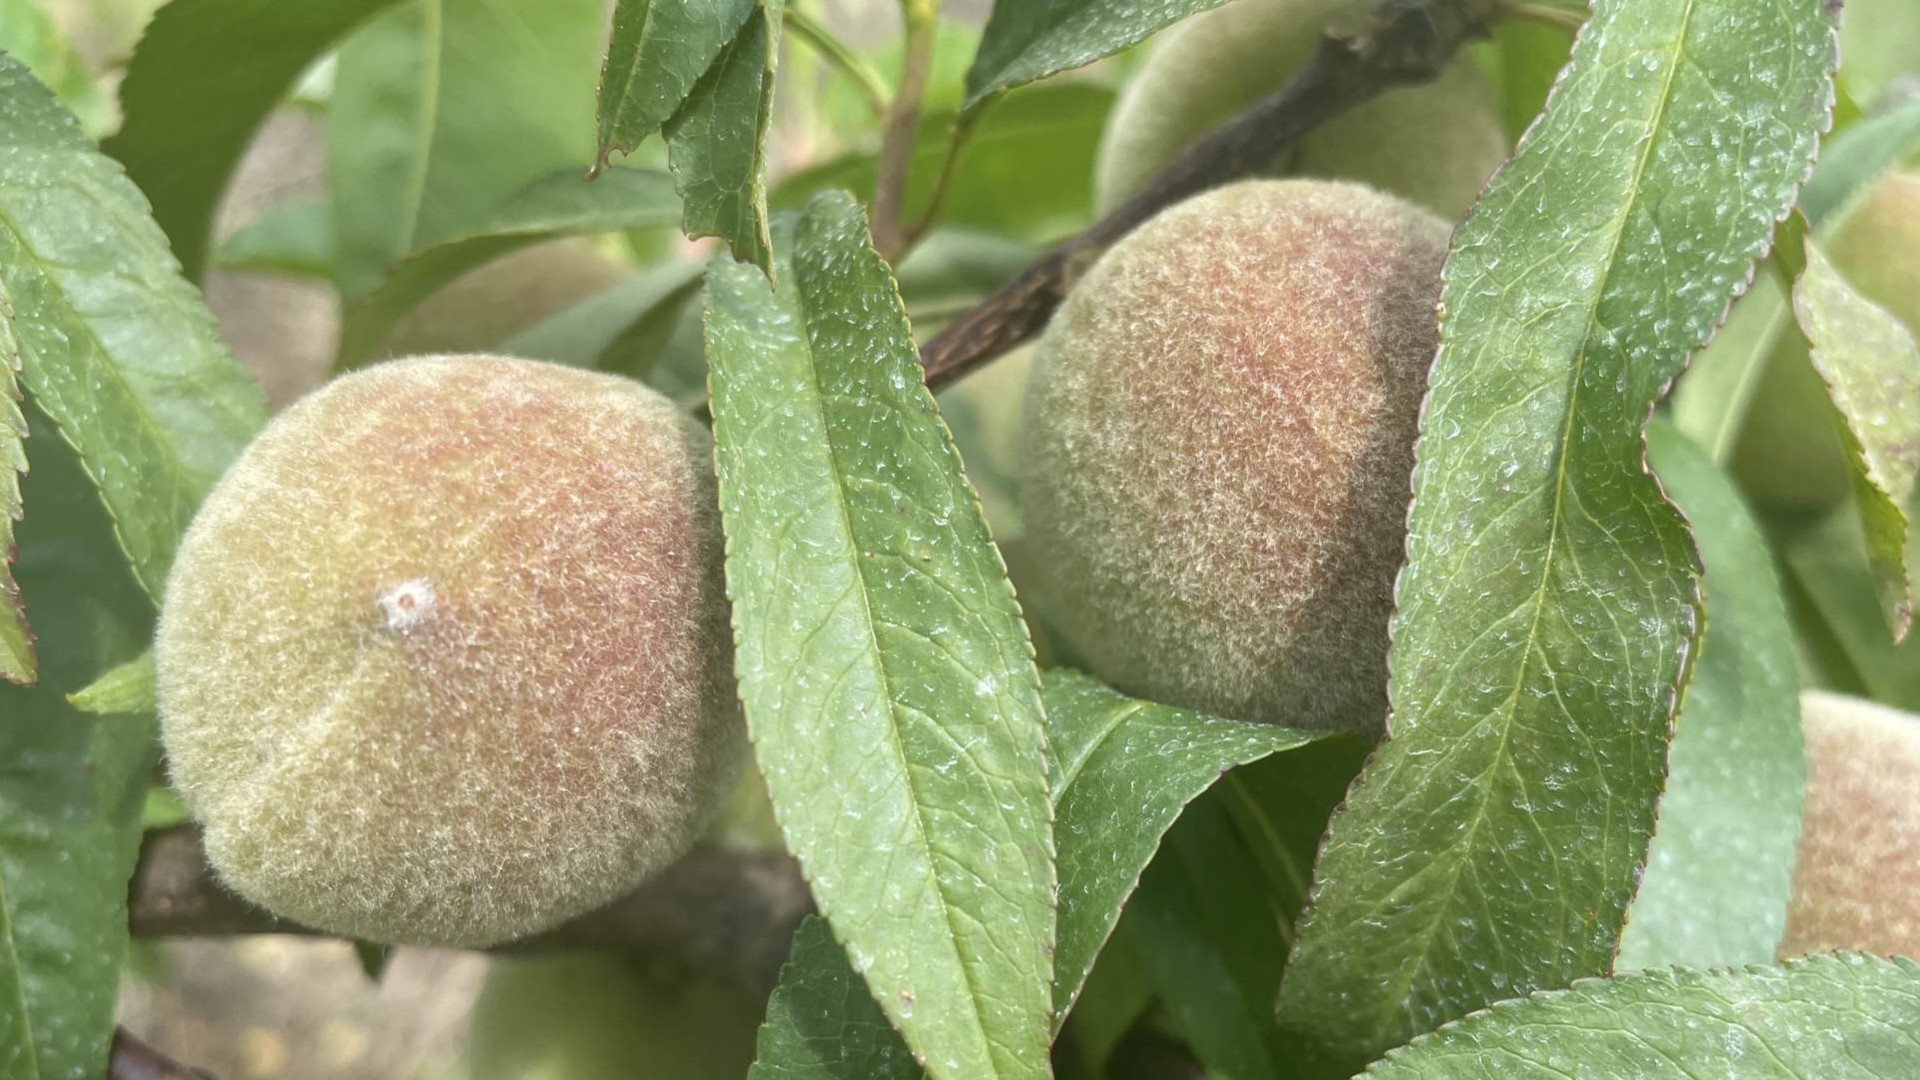 Georgia-grown peaches took a hit with two freezes this season.